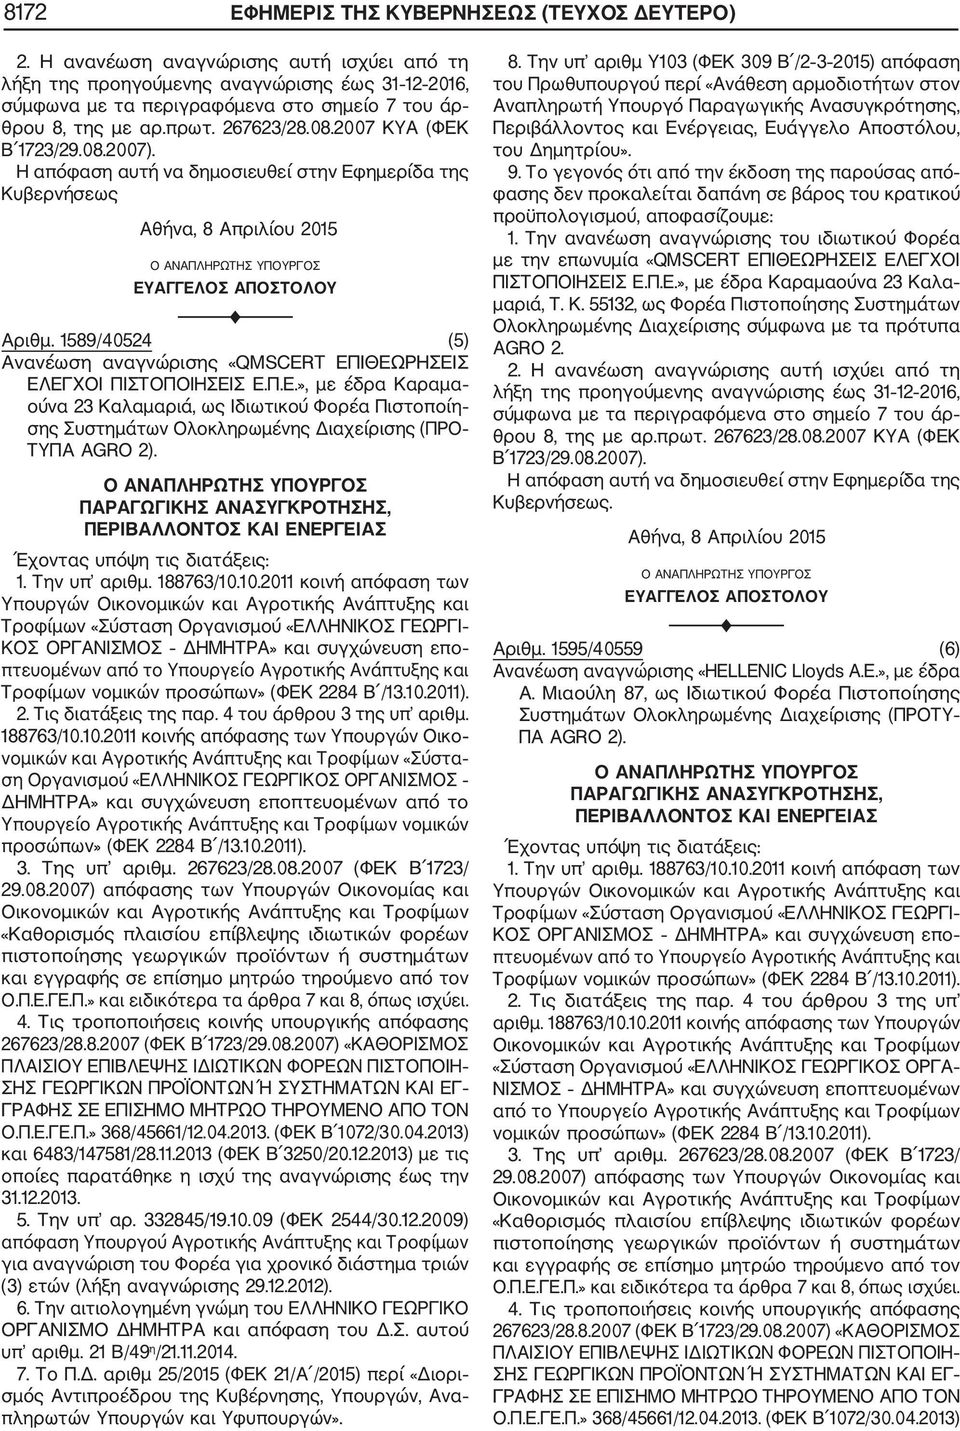 Αριθμ. 1595/40559 (6) Ανανέωση αναγνώρισης «HELLENIC Lloyds A.E.», με έδρα Α. Μιαούλη 87, ως Ιδιωτικού Φορέα Πιστοποίησης Συστημάτων Ολοκληρωμένης Διαχείρισης (ΠΡΟΤΥ ΠΑ AGRO 2). 2. Τις διατάξεις της παρ.